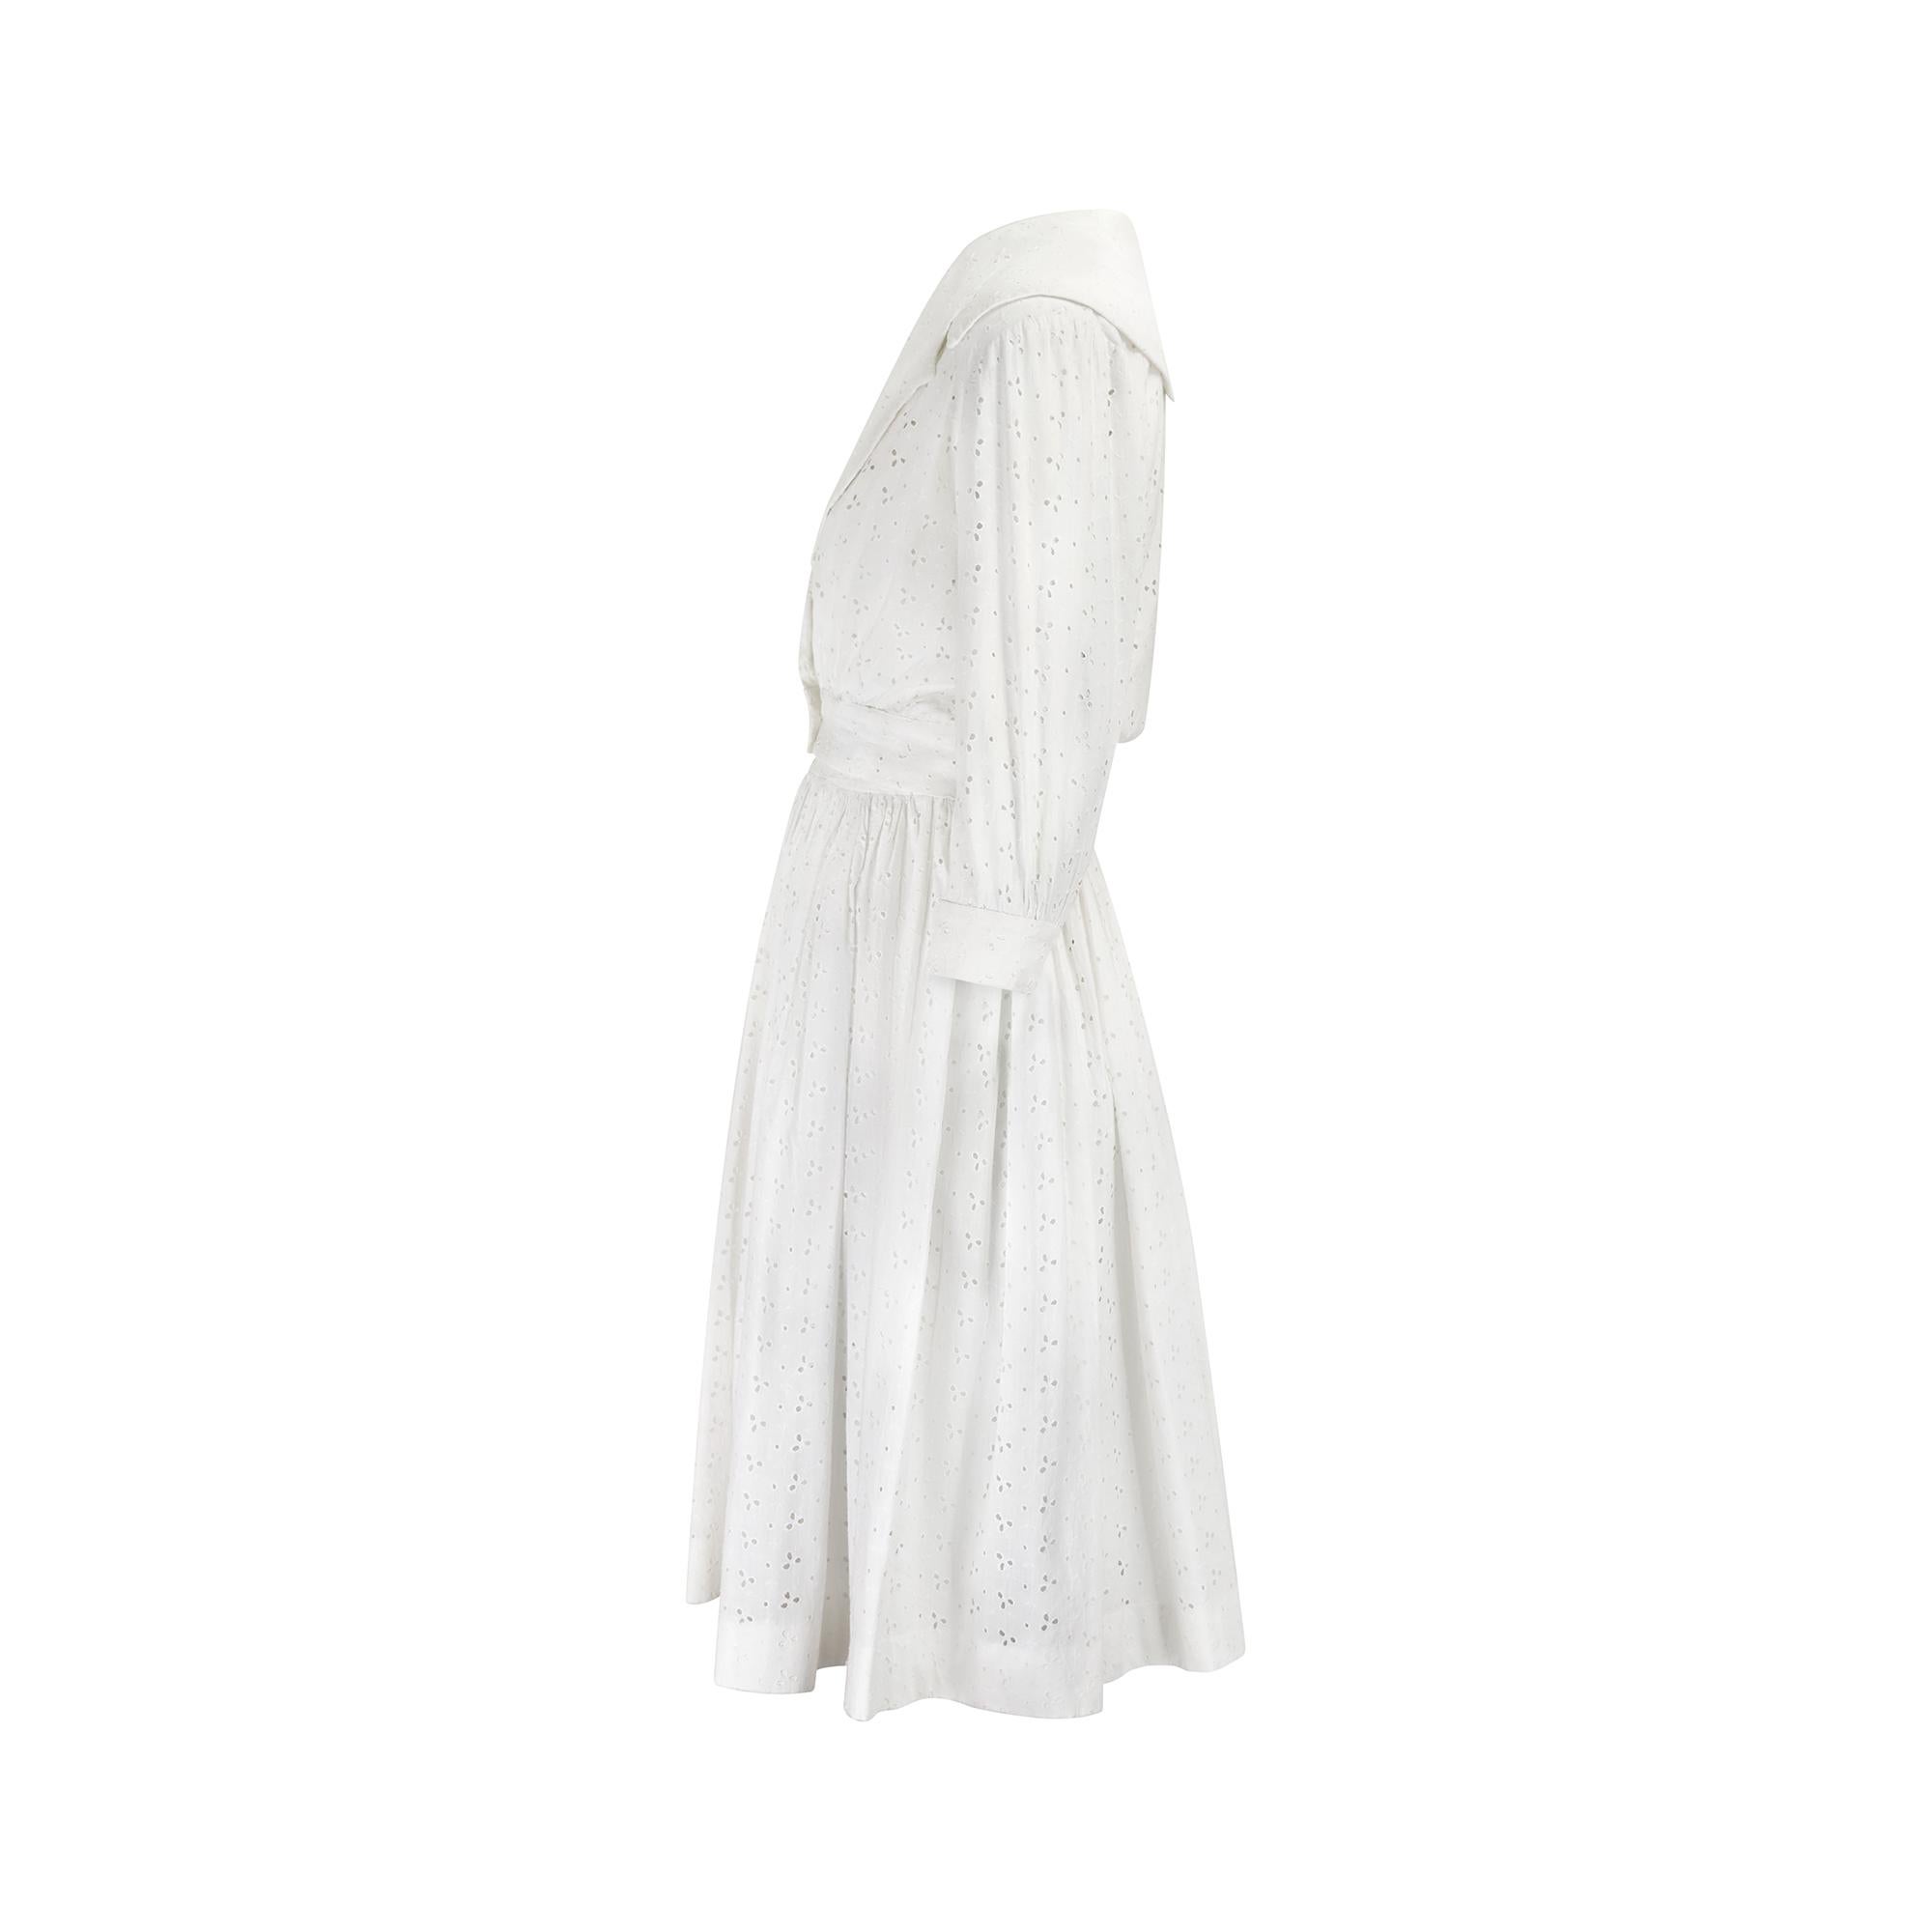 Das Kleid mit Lochstickerei ist seit der viktorianischen Ära ein Klassiker der britischen Sommermode. Es zeichnet sich durch gestickte Details und Guckloch-Ösen auf knackigem Baumwollstoff aus und zeigt bei genauem Hinsehen oft verschlungene